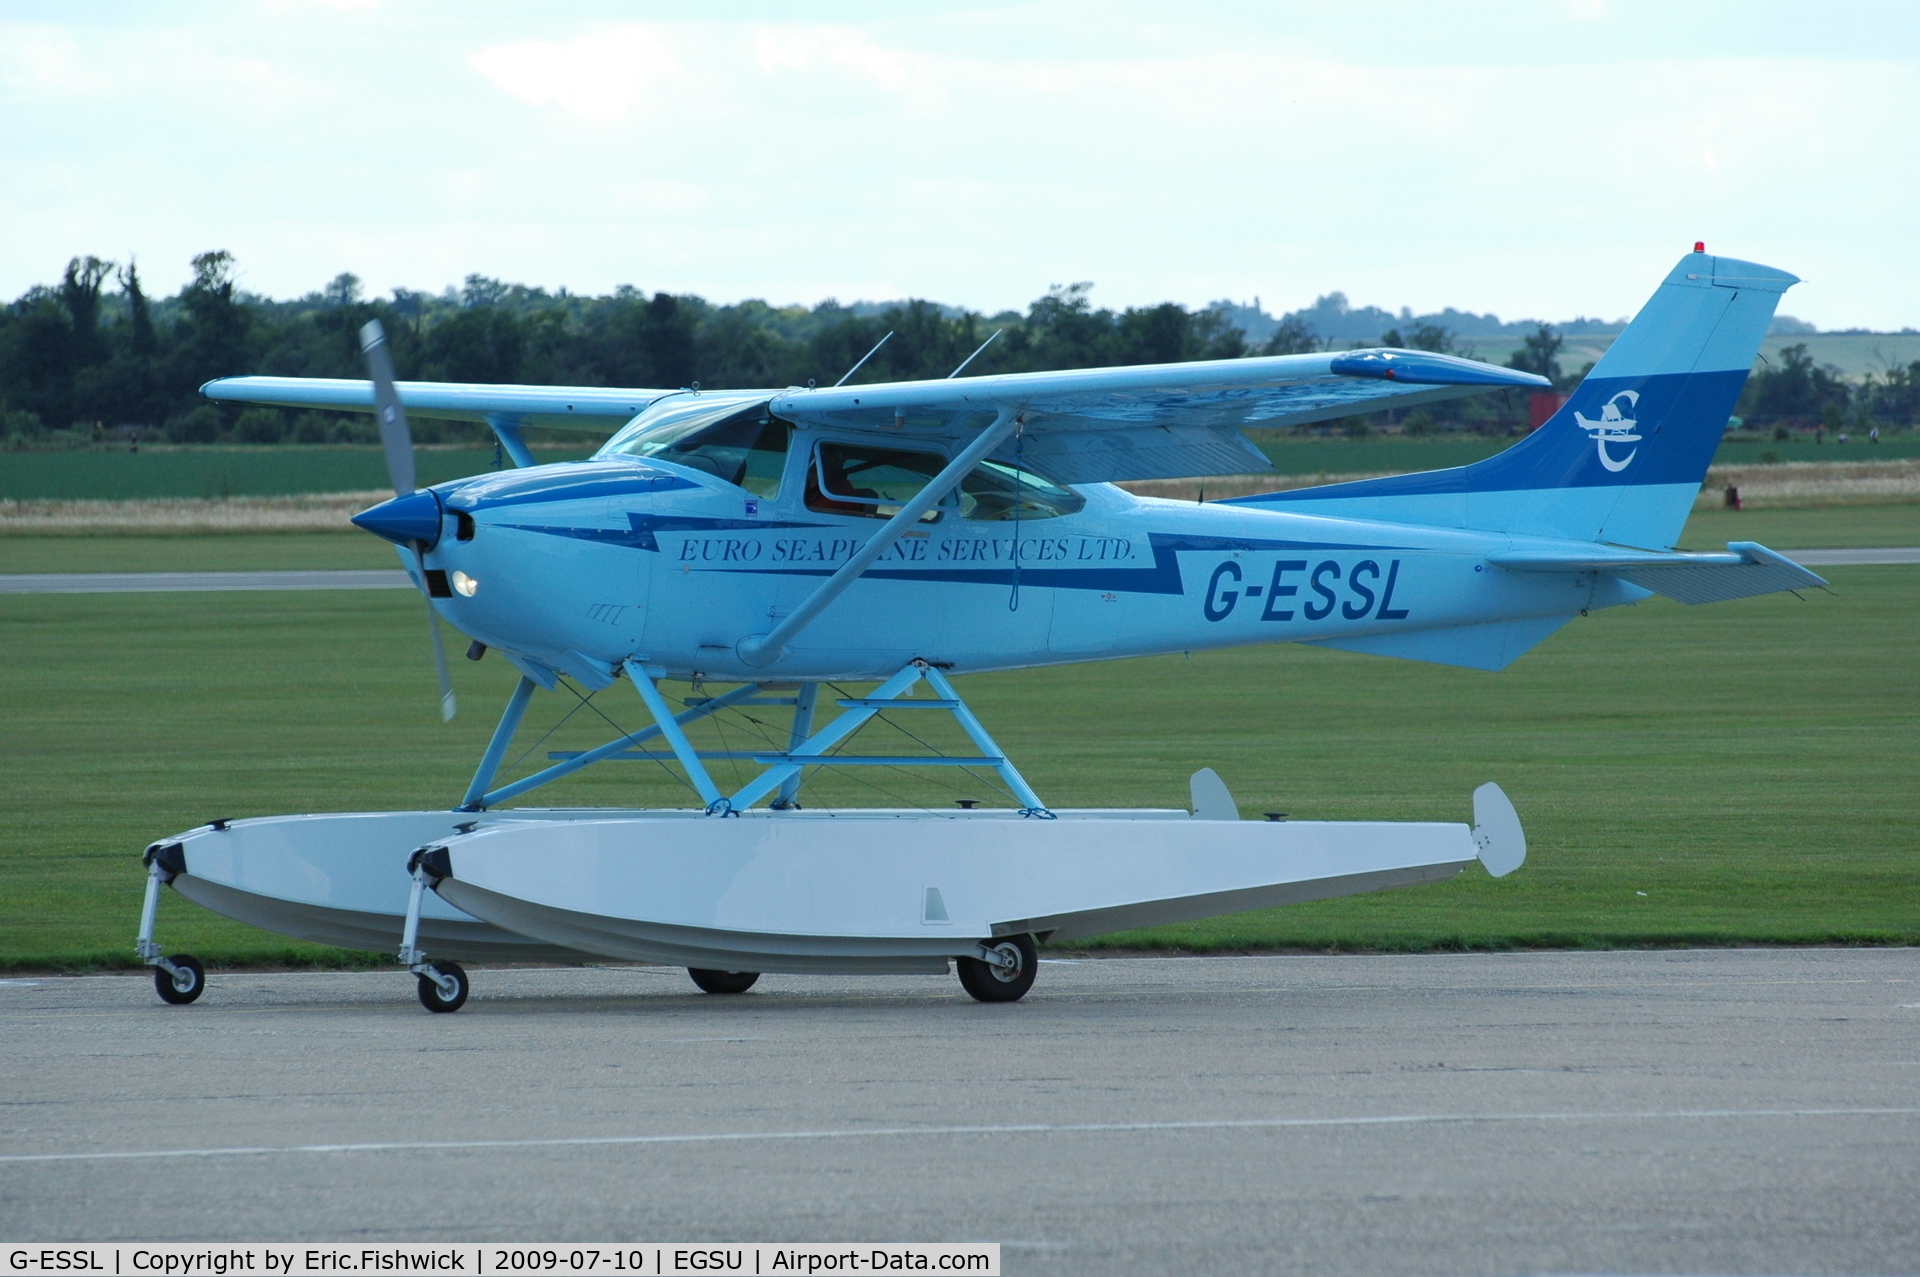 G-ESSL, 1981 Cessna 182R Skylane C/N 182-67947, G-ESSL at Duxford Airport